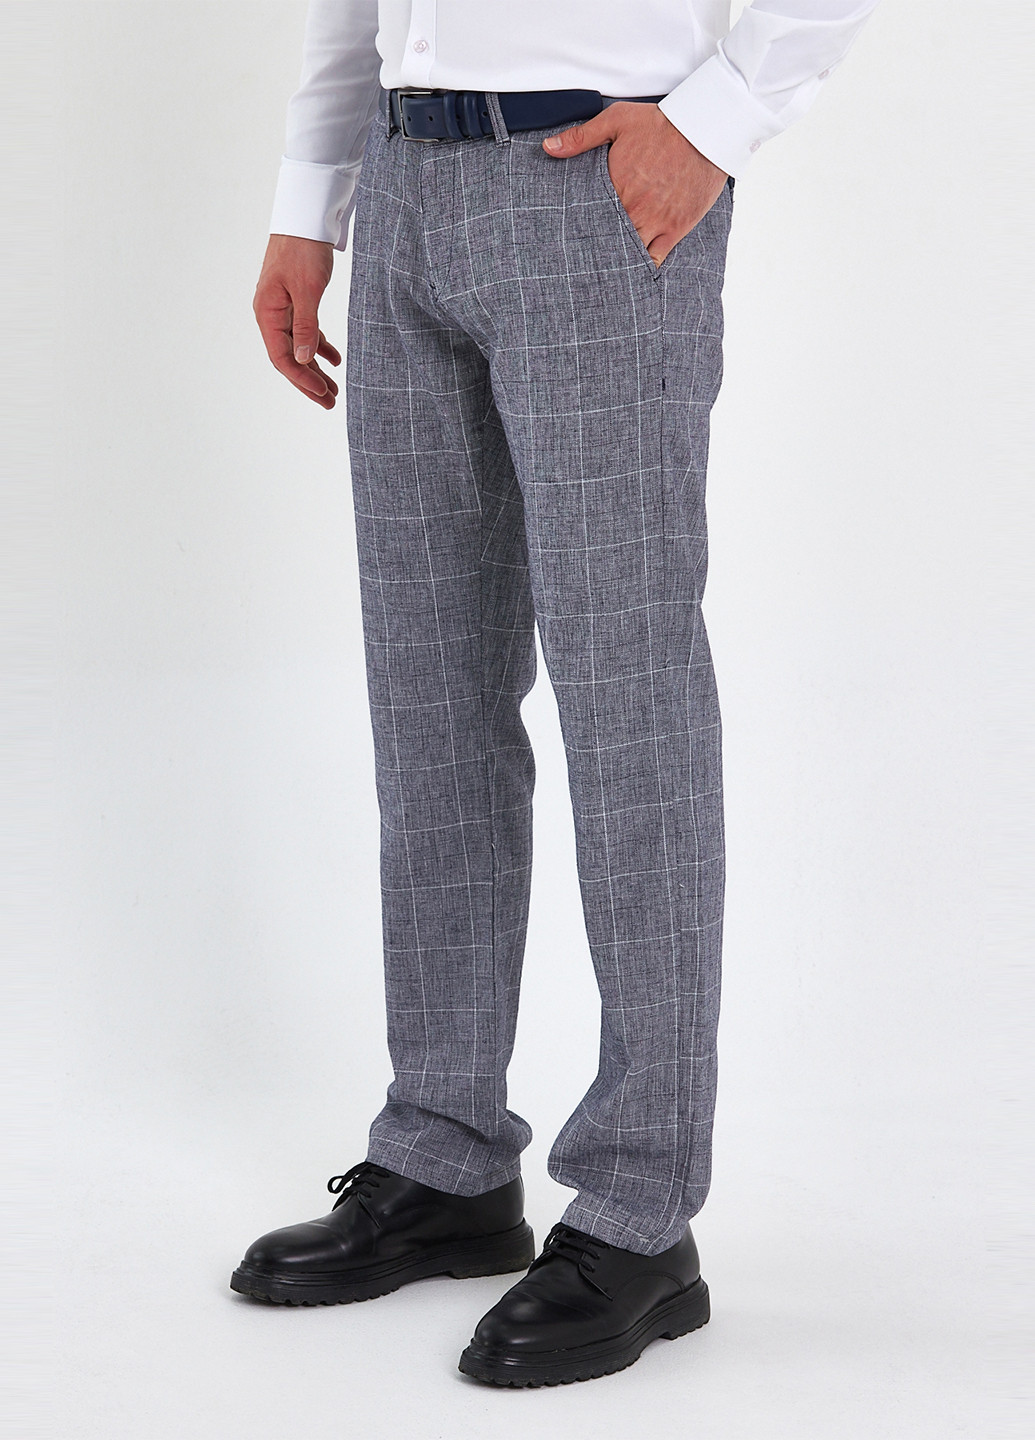 Серые классические летние прямые брюки Trend Collection